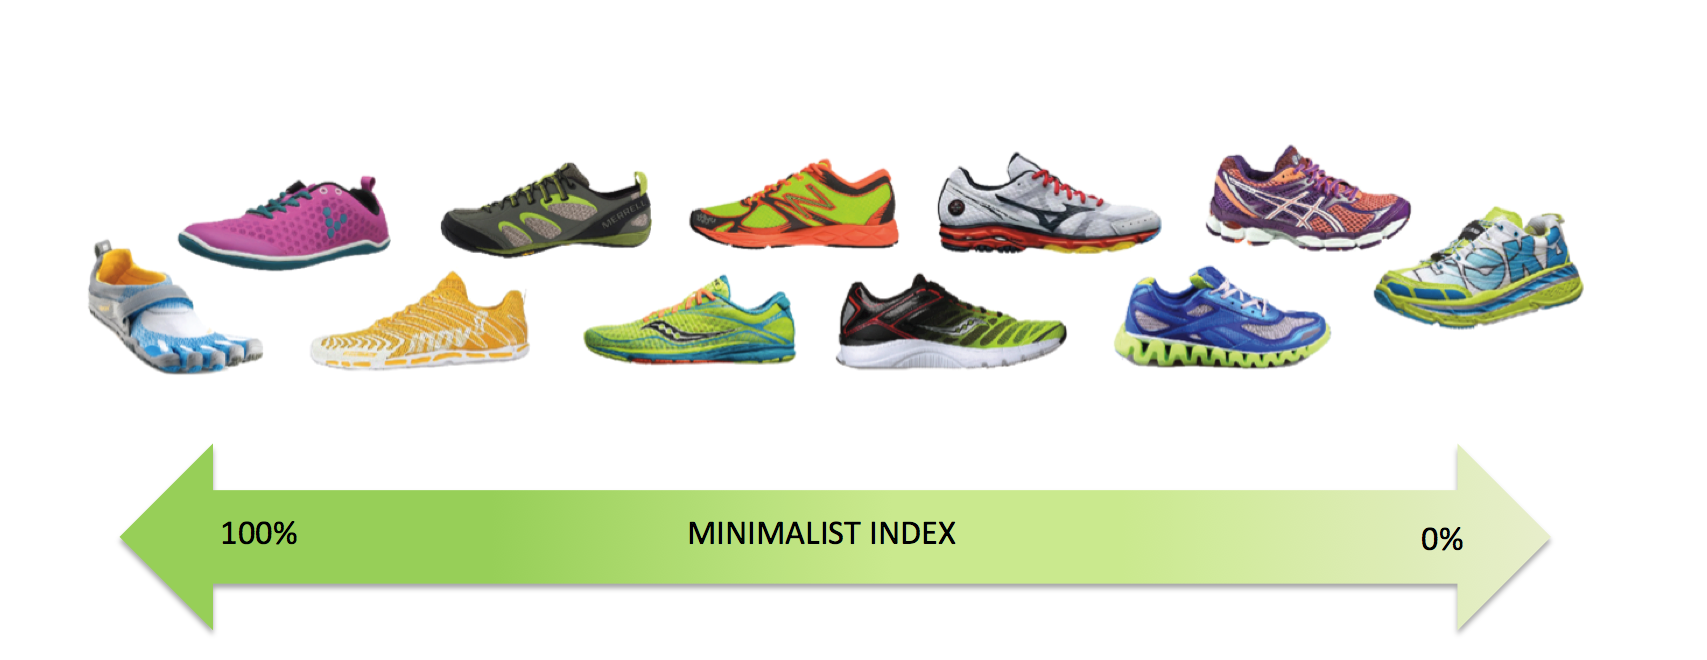 come scegliere scarpe da running